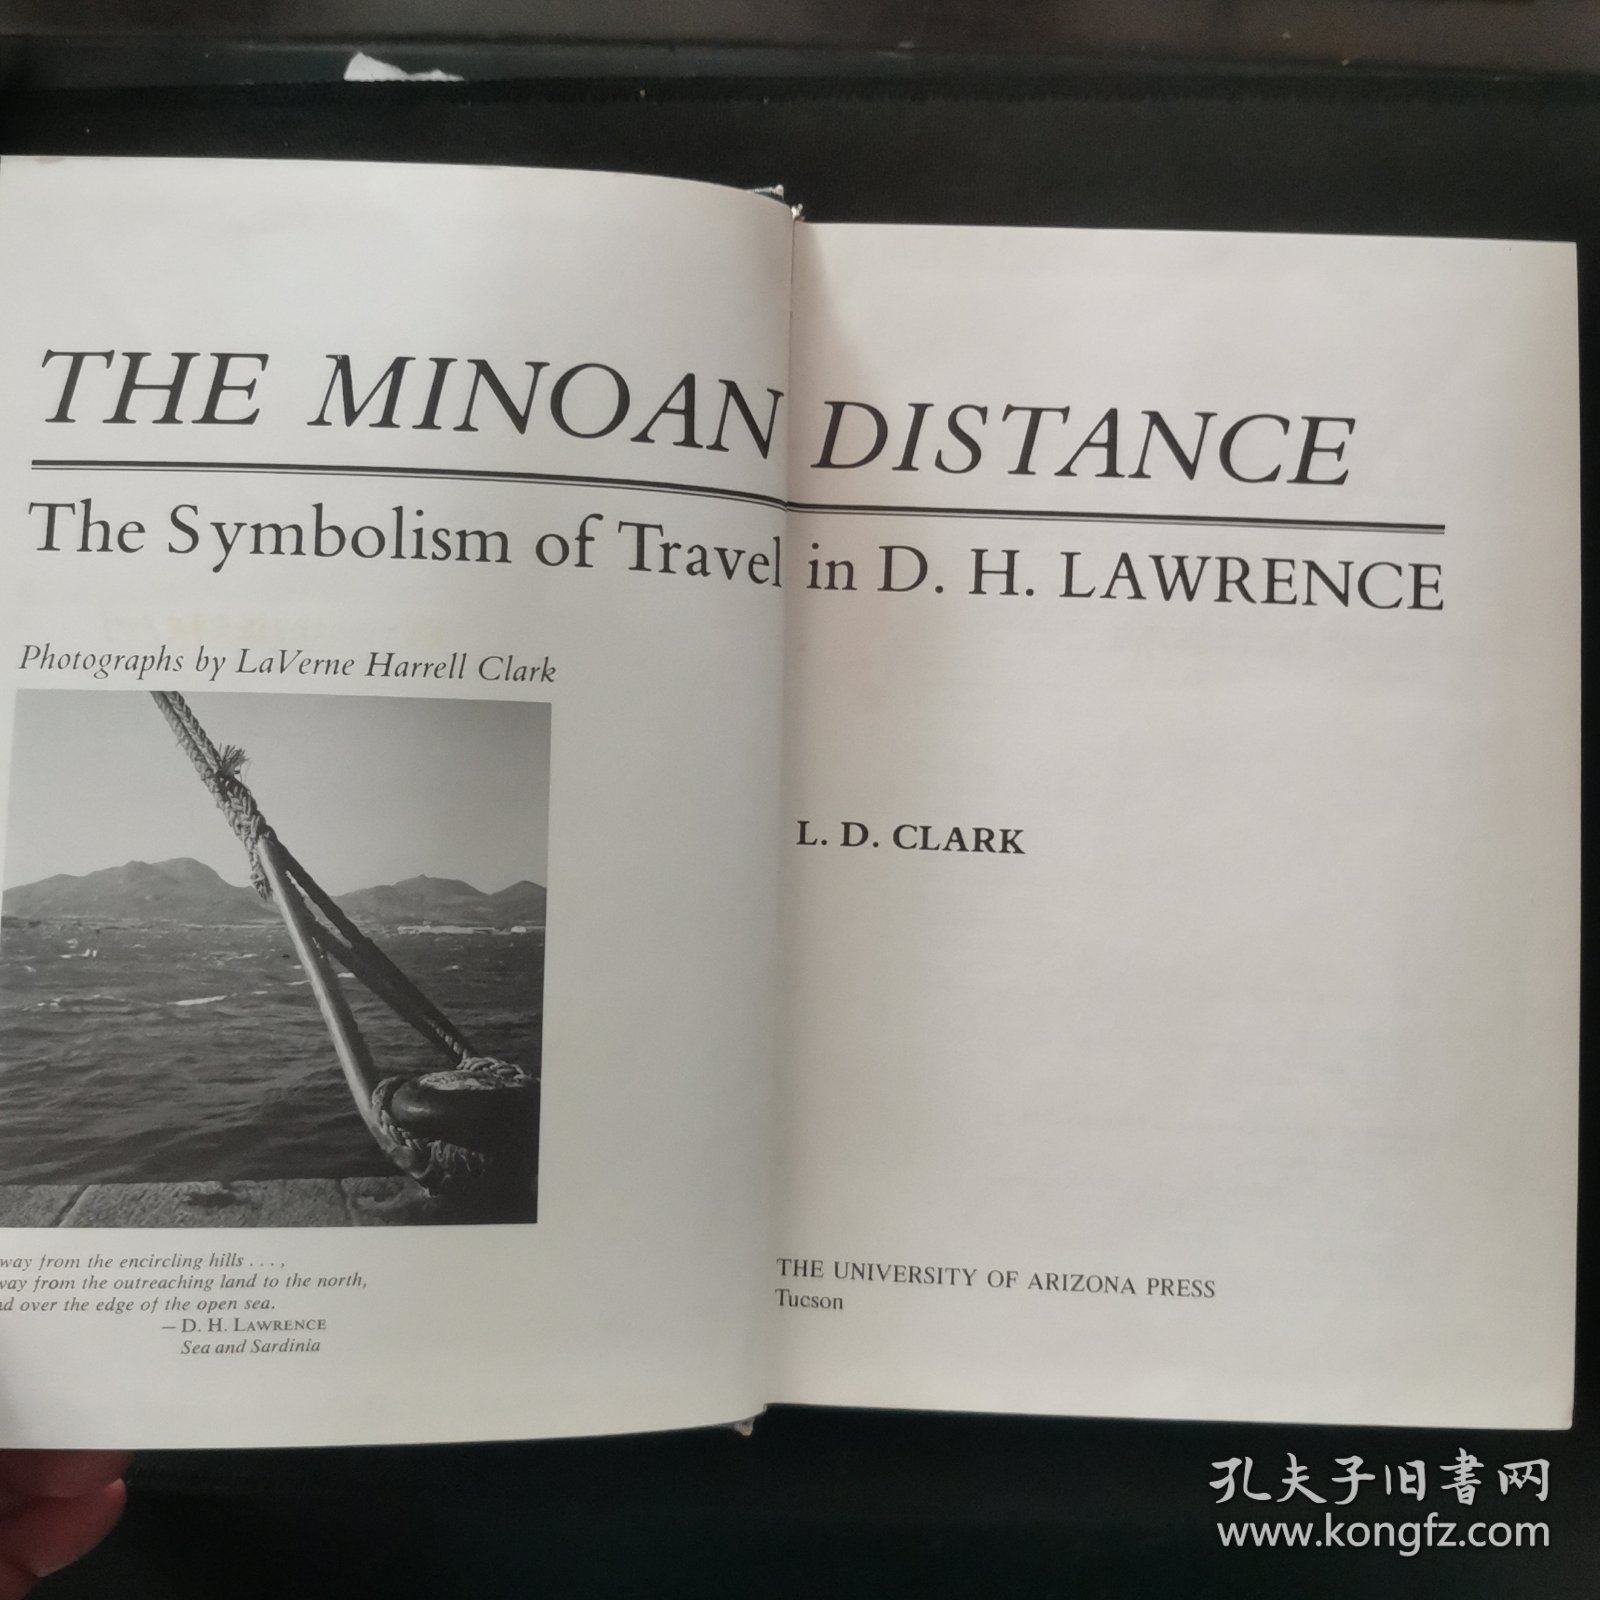 【英文原版书】THE MINOAN DISTANCE The Symbolism of Travel in D. H. LAWRENCE